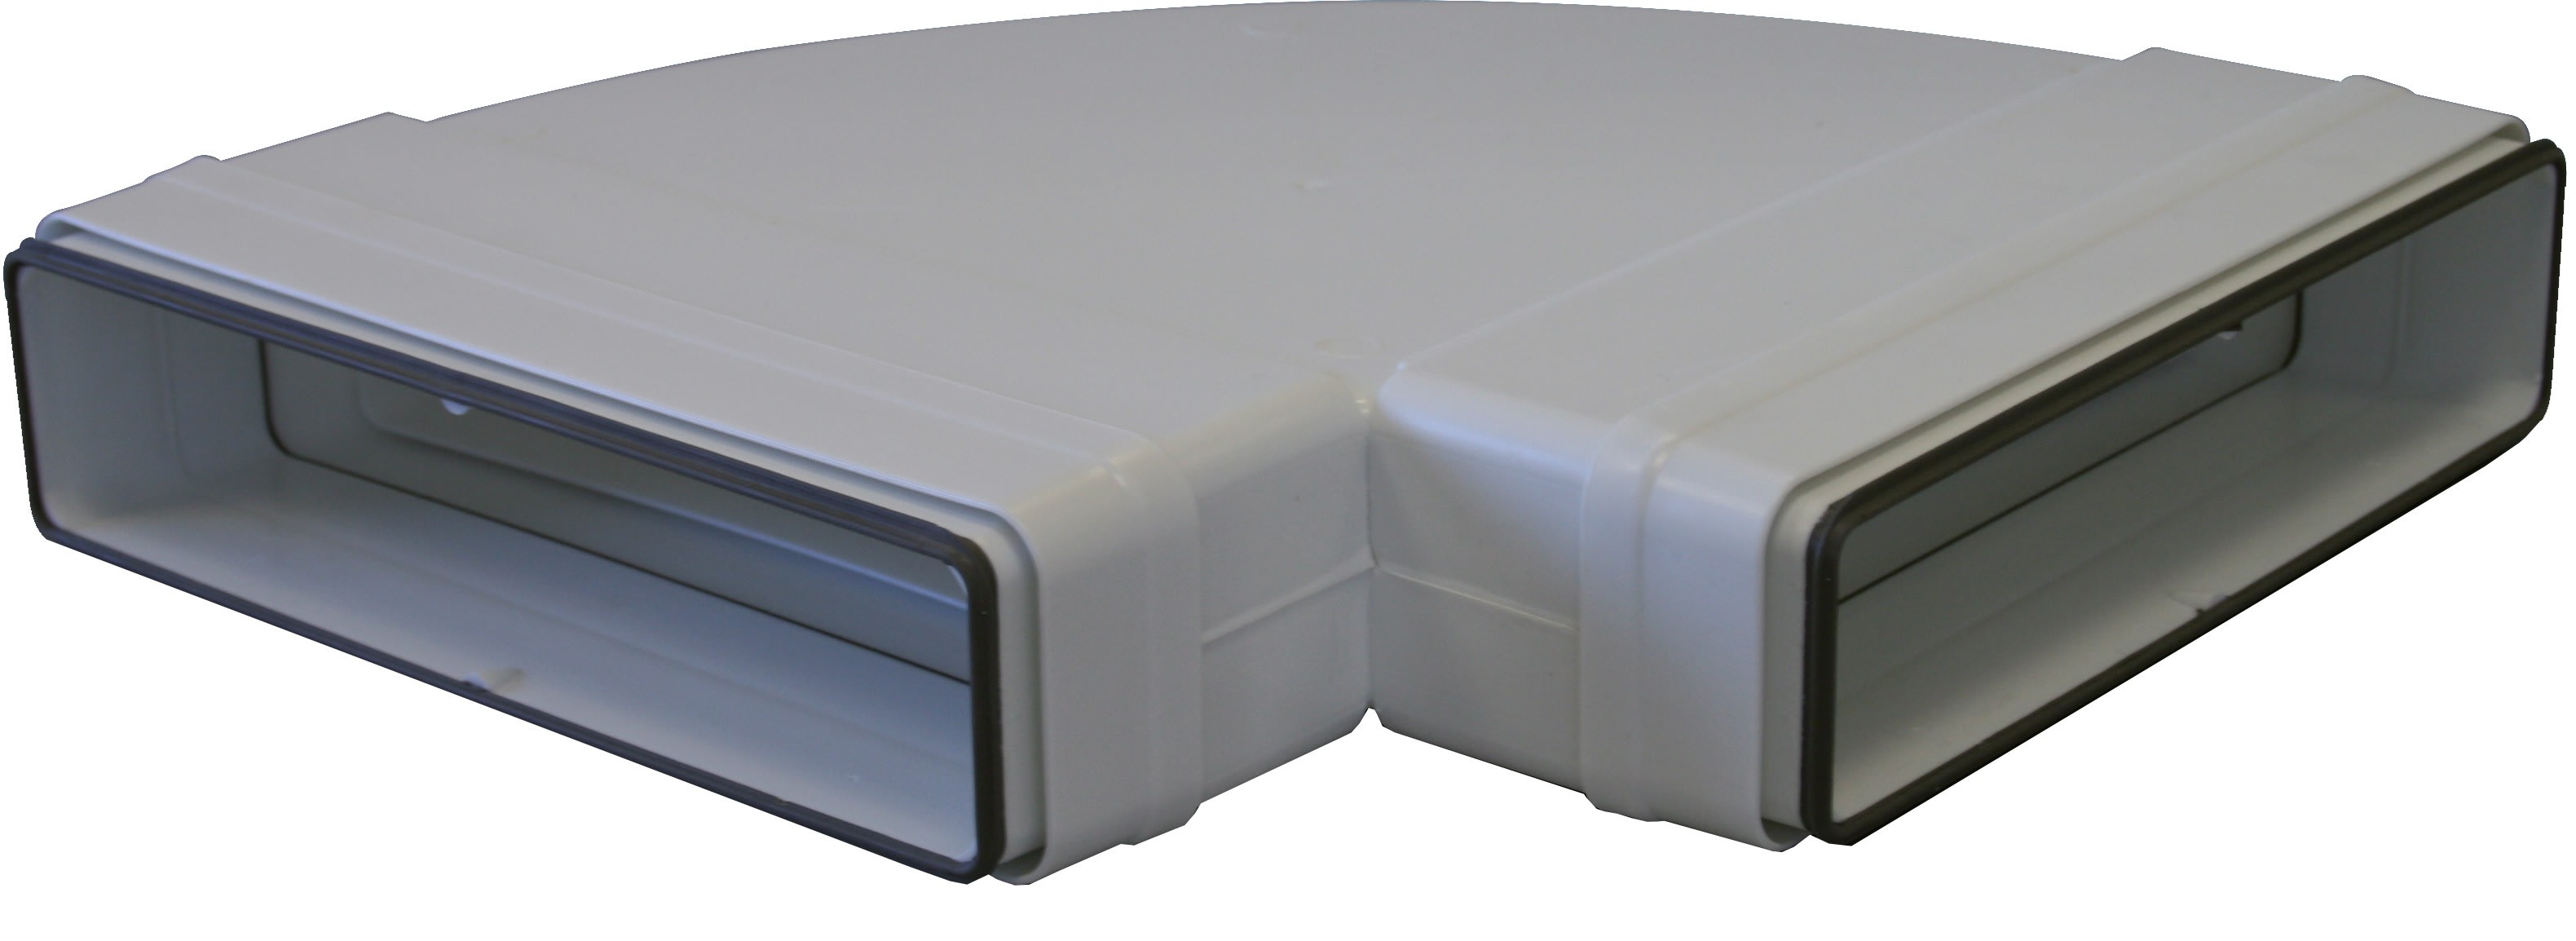 S&P - Coude 90° horizontal PVC rigide à joints d'étanchéité, rectangulaire 55 x 220 mm